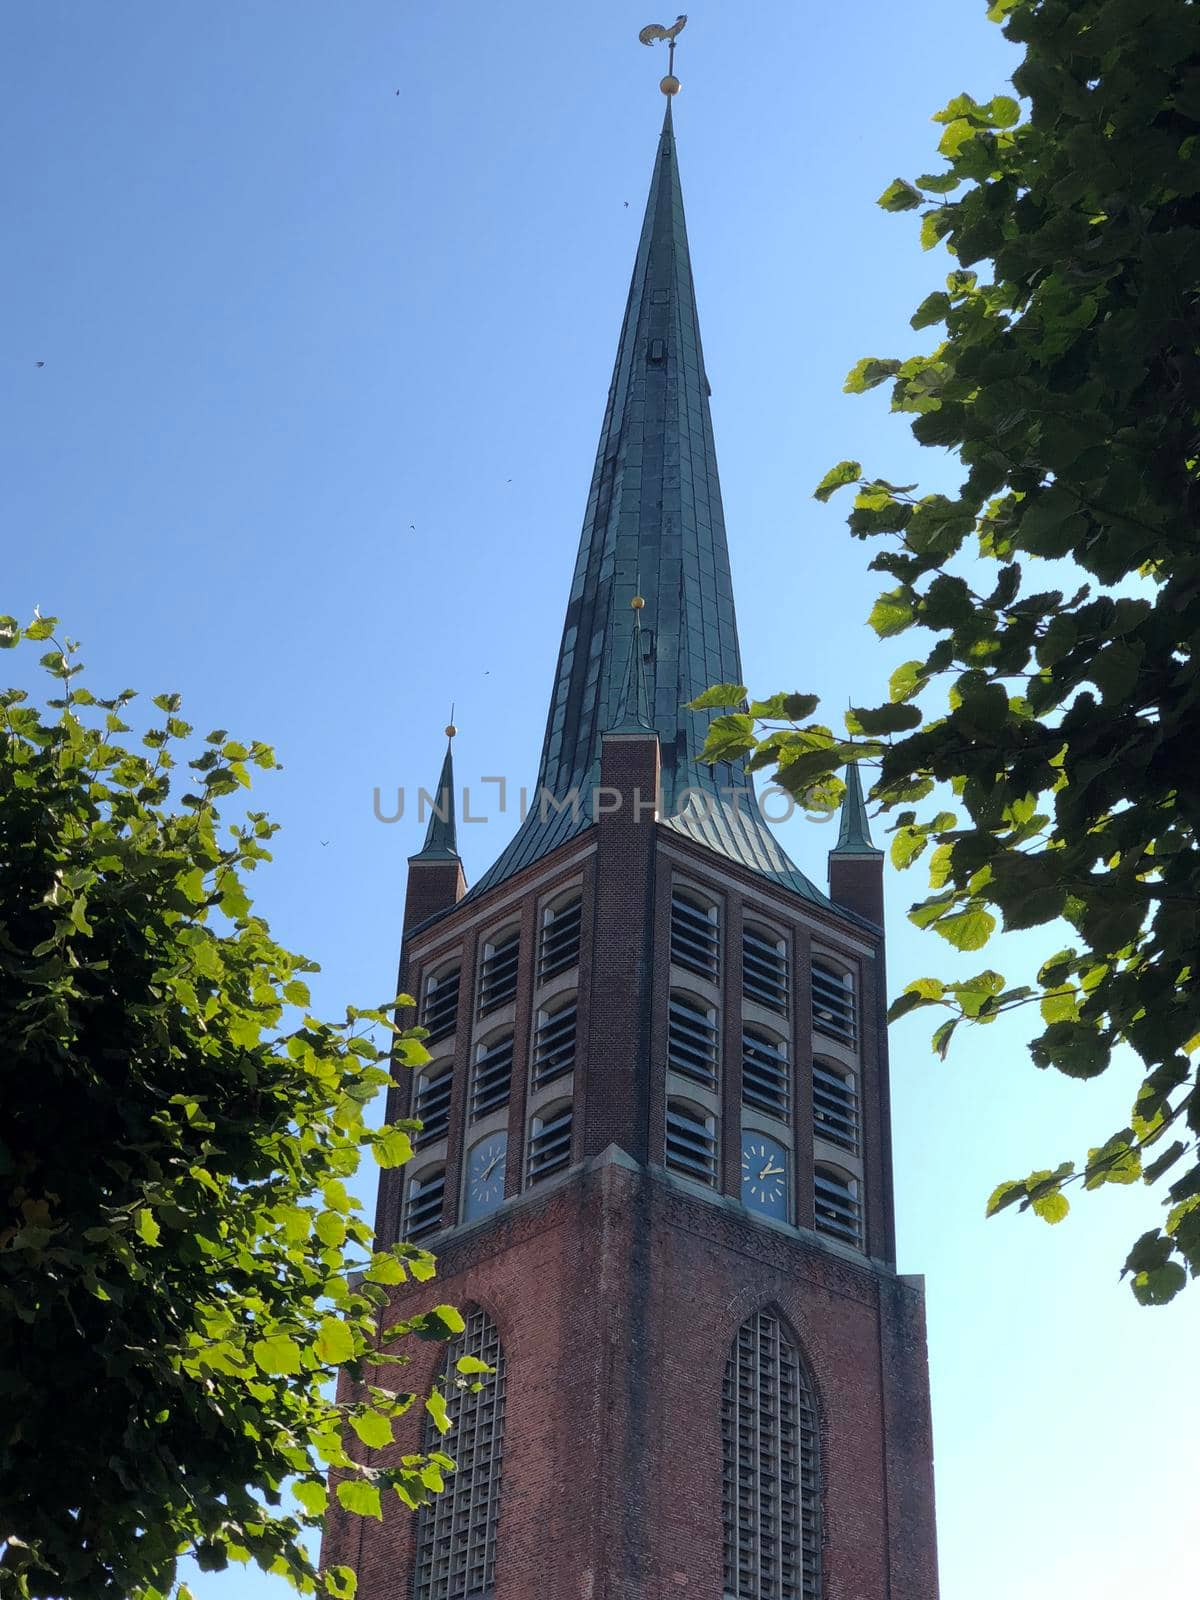 Schweizer church in Emden, Germany